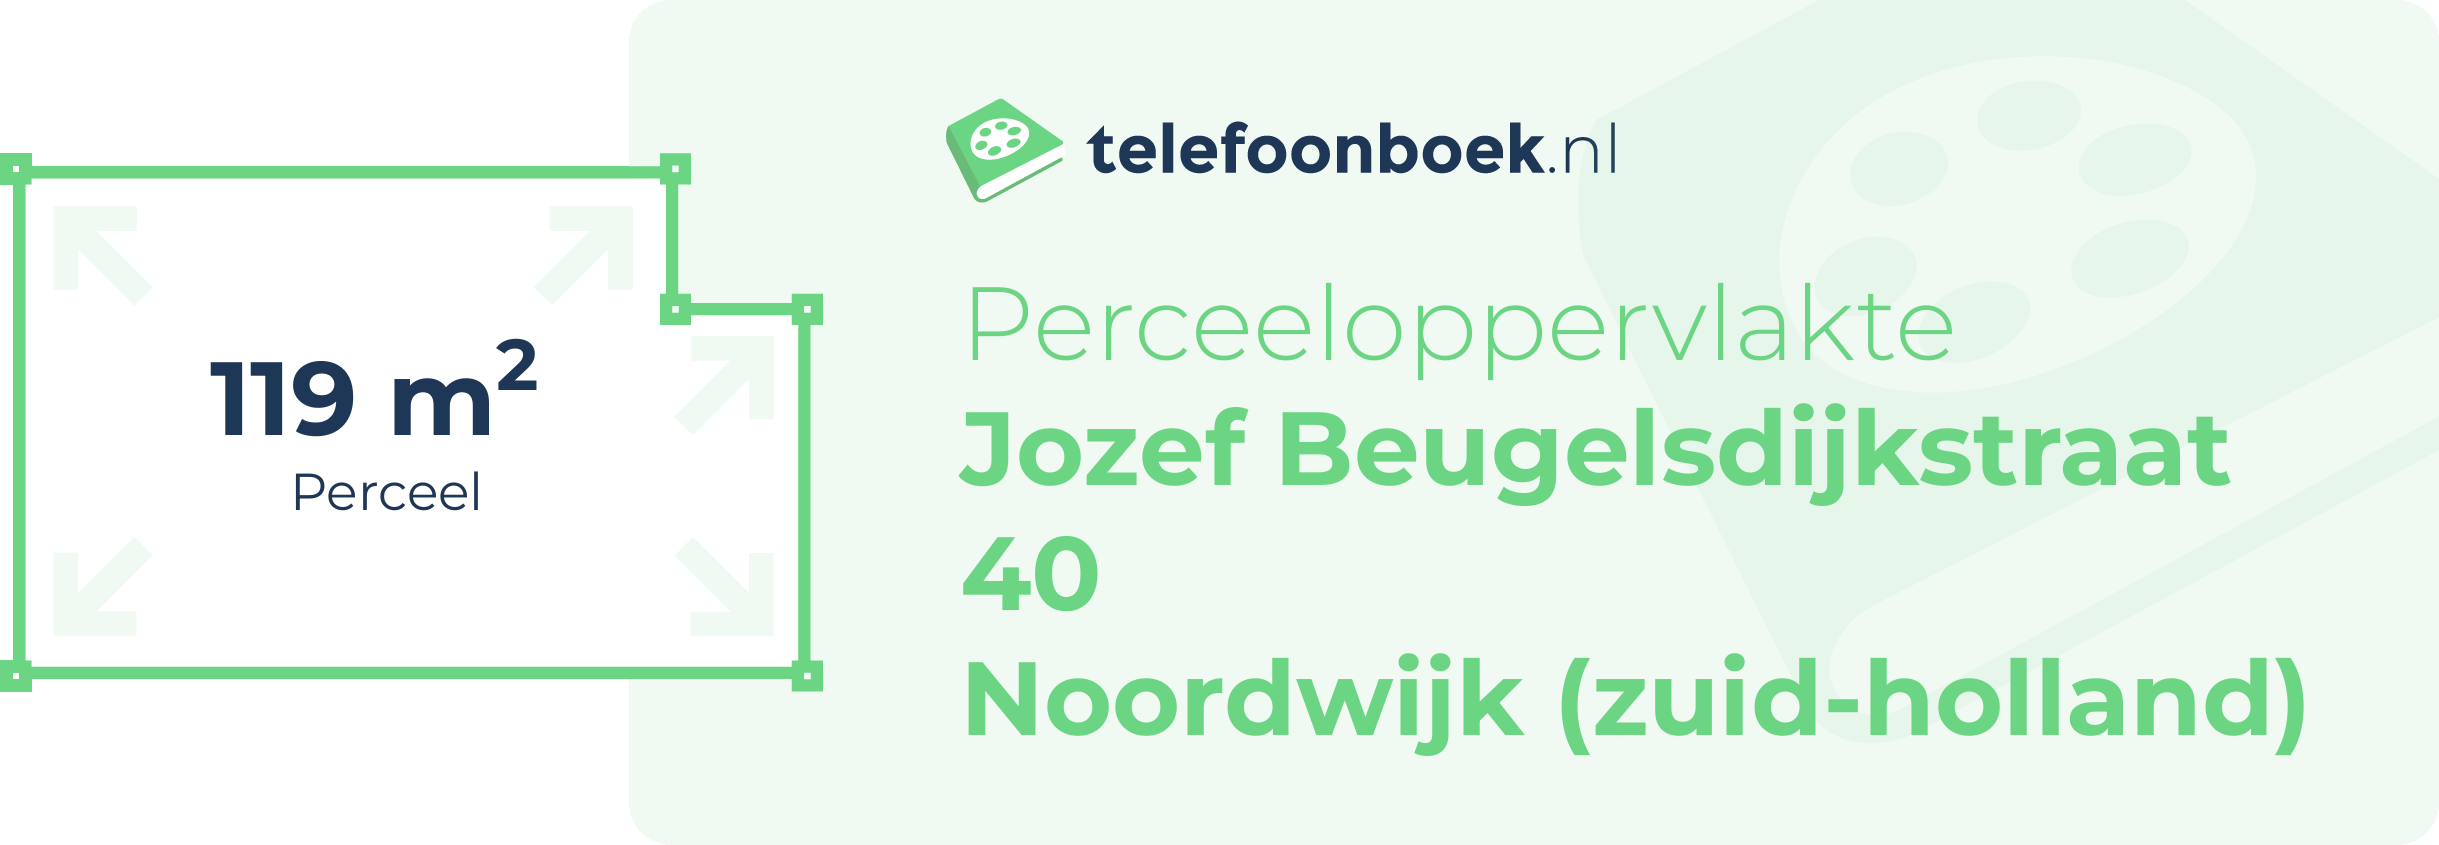 Perceeloppervlakte Jozef Beugelsdijkstraat 40 Noordwijk (Zuid-Holland)